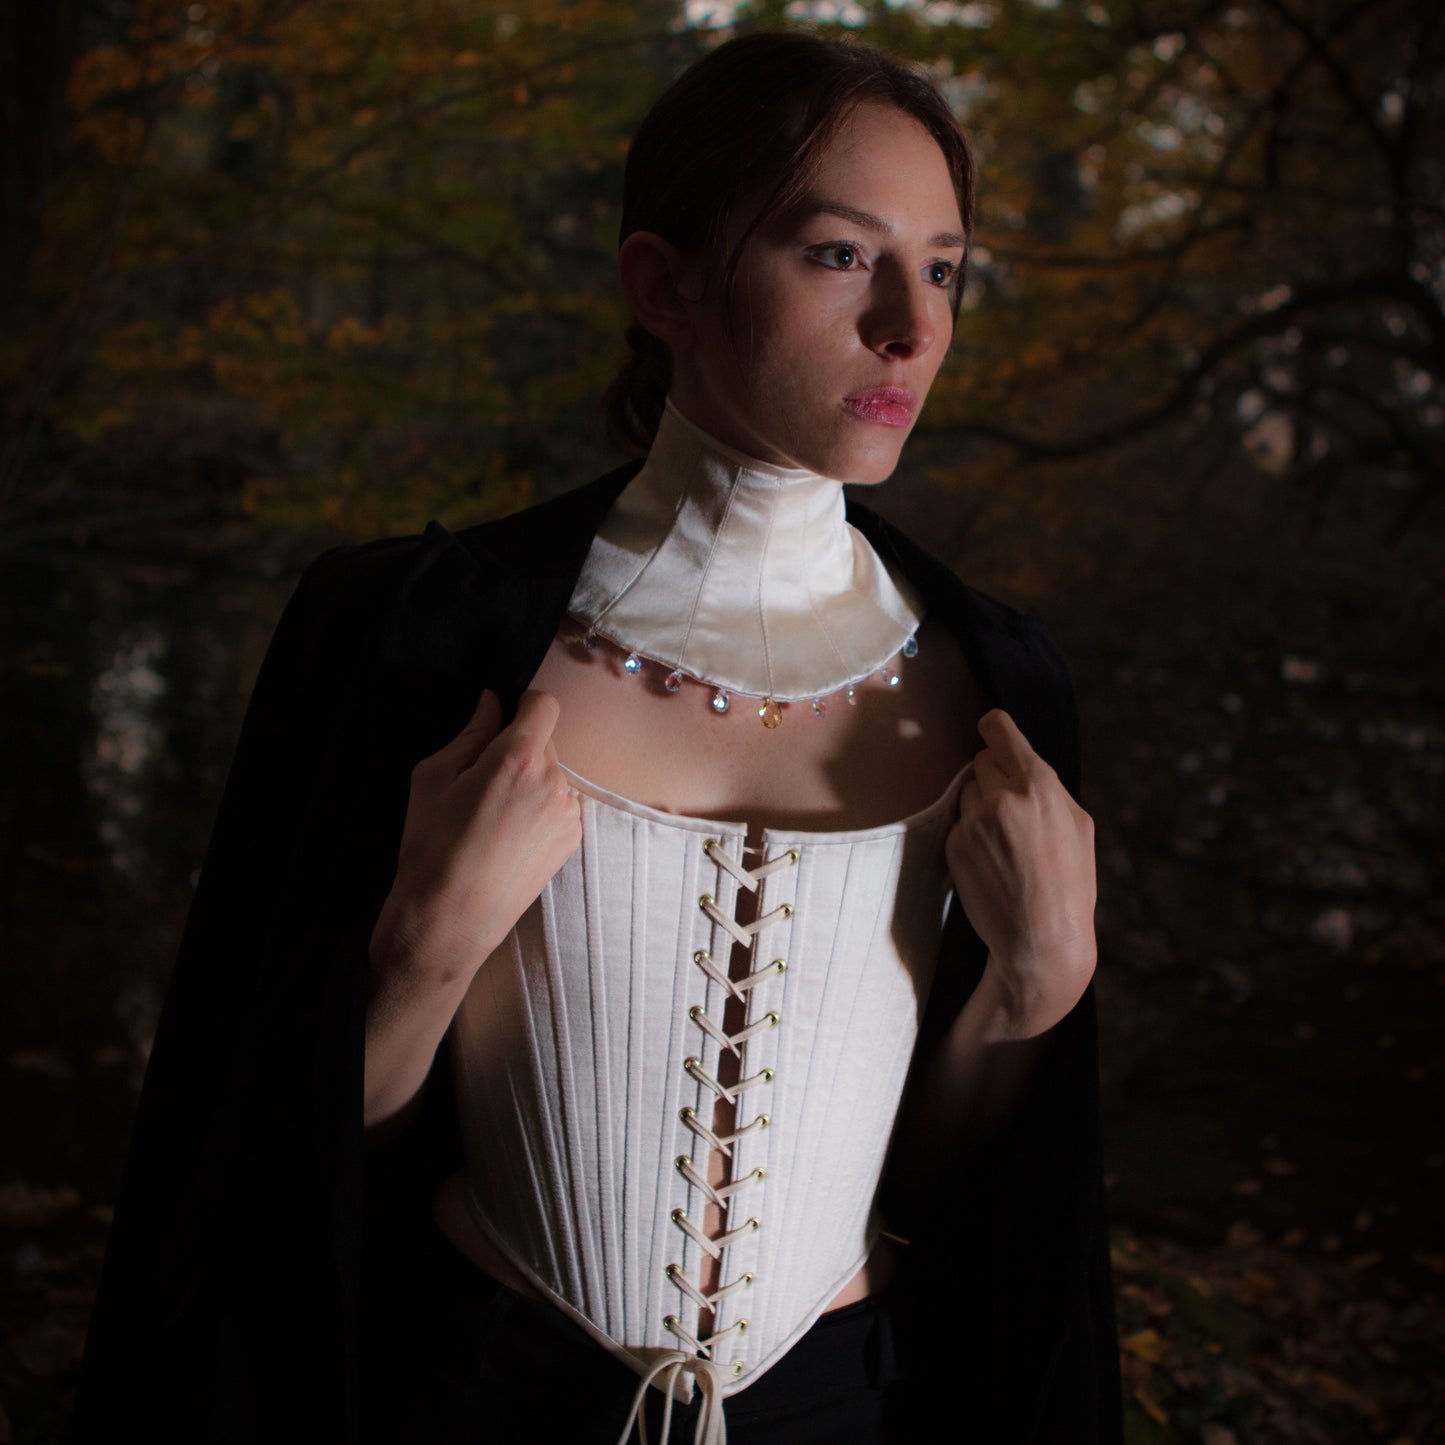 Morpho-neck corset collar